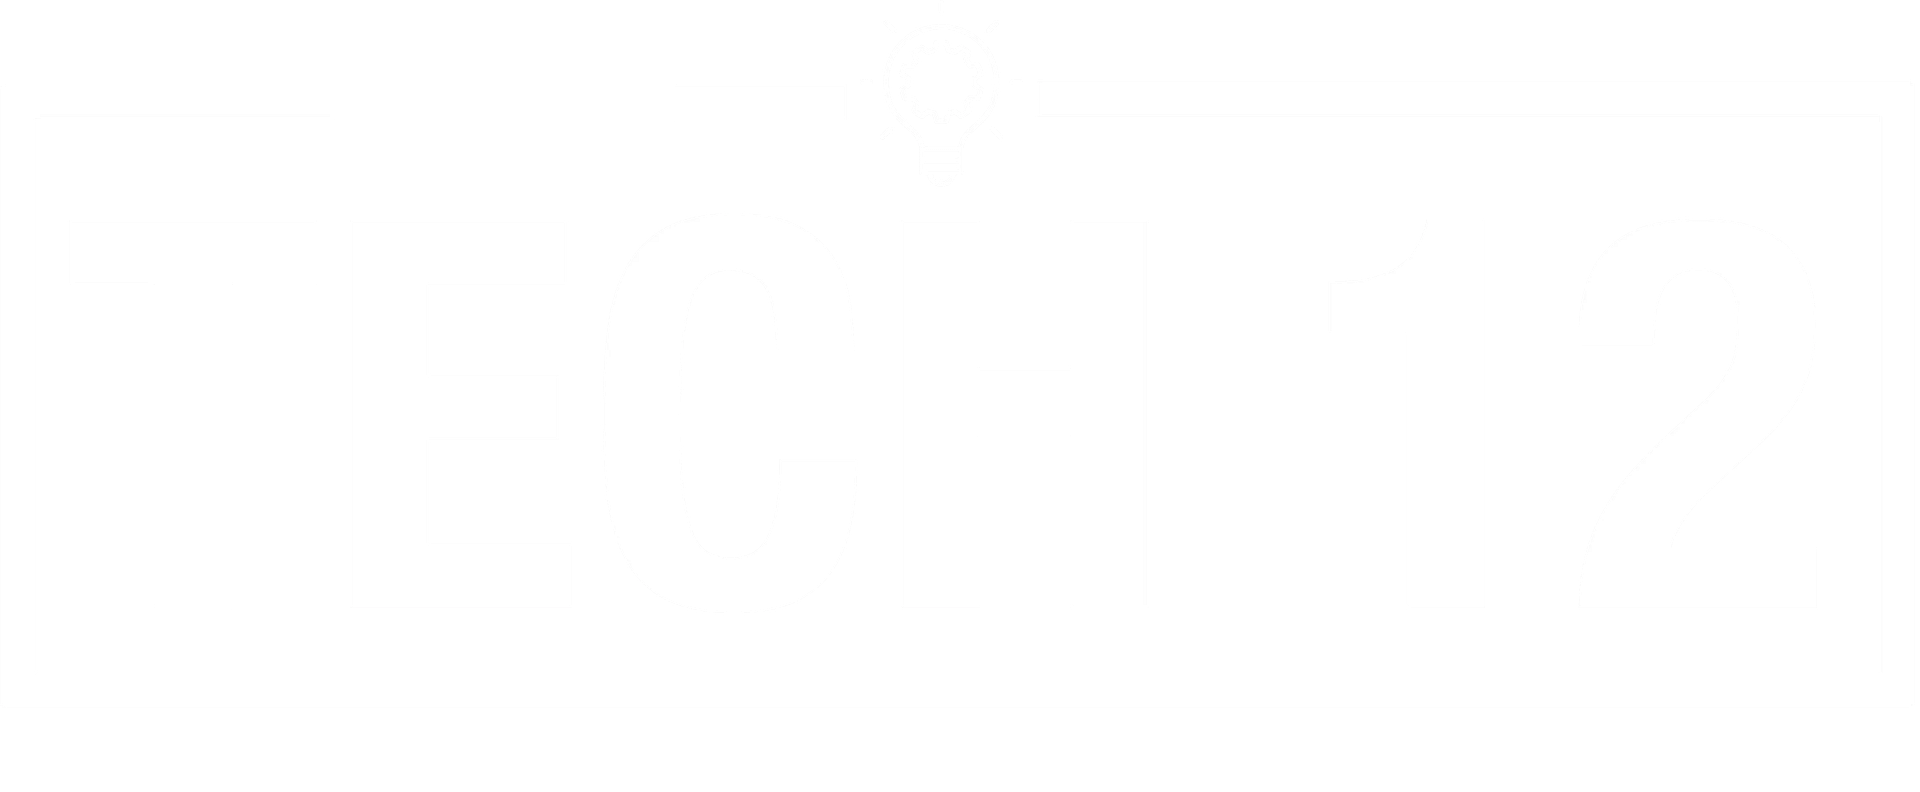 Tech 12